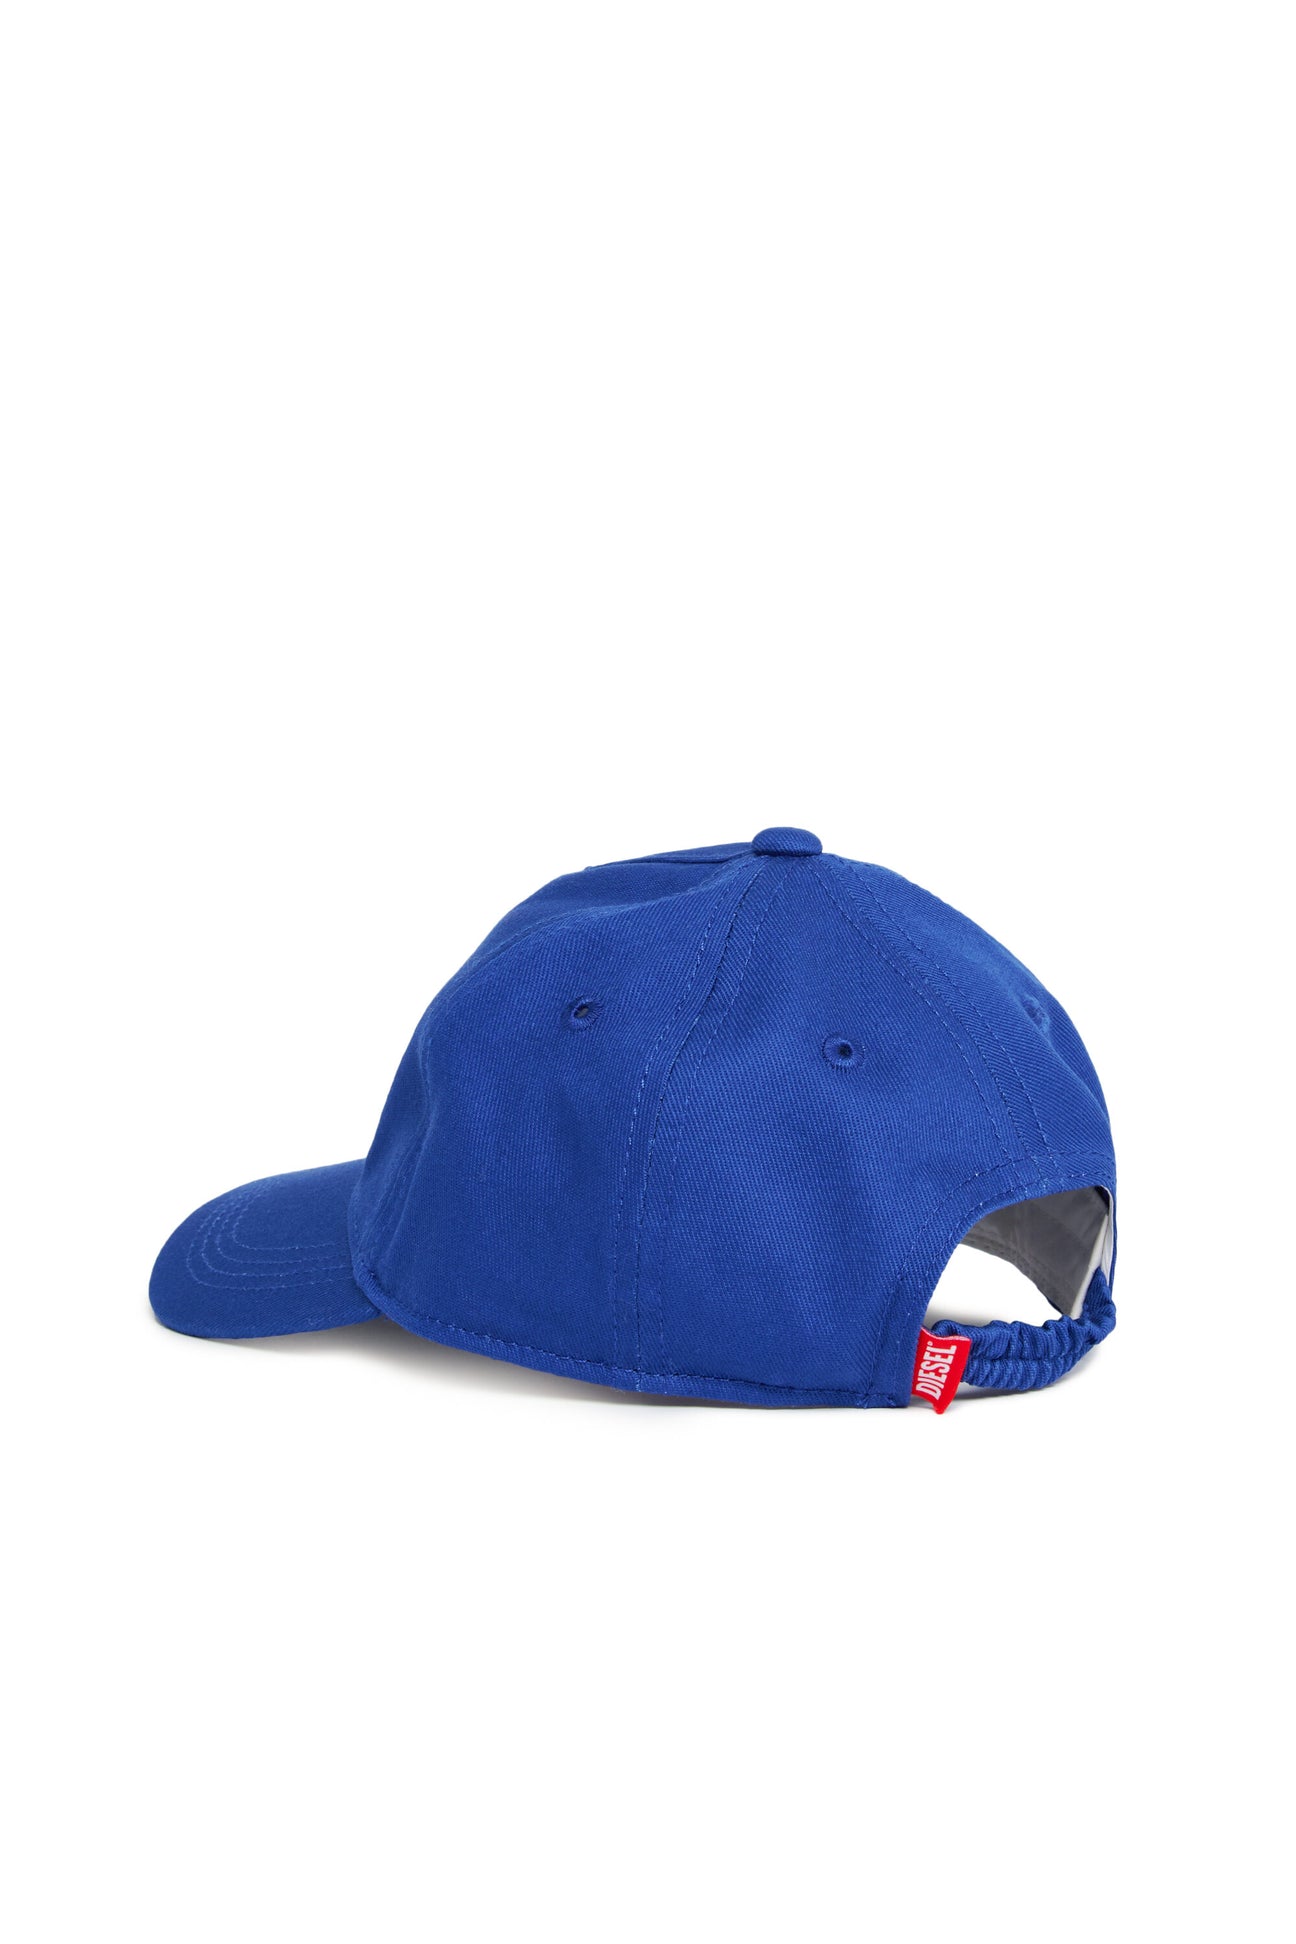 Oval D branded garbardine baseball cap Oval D branded garbardine baseball cap